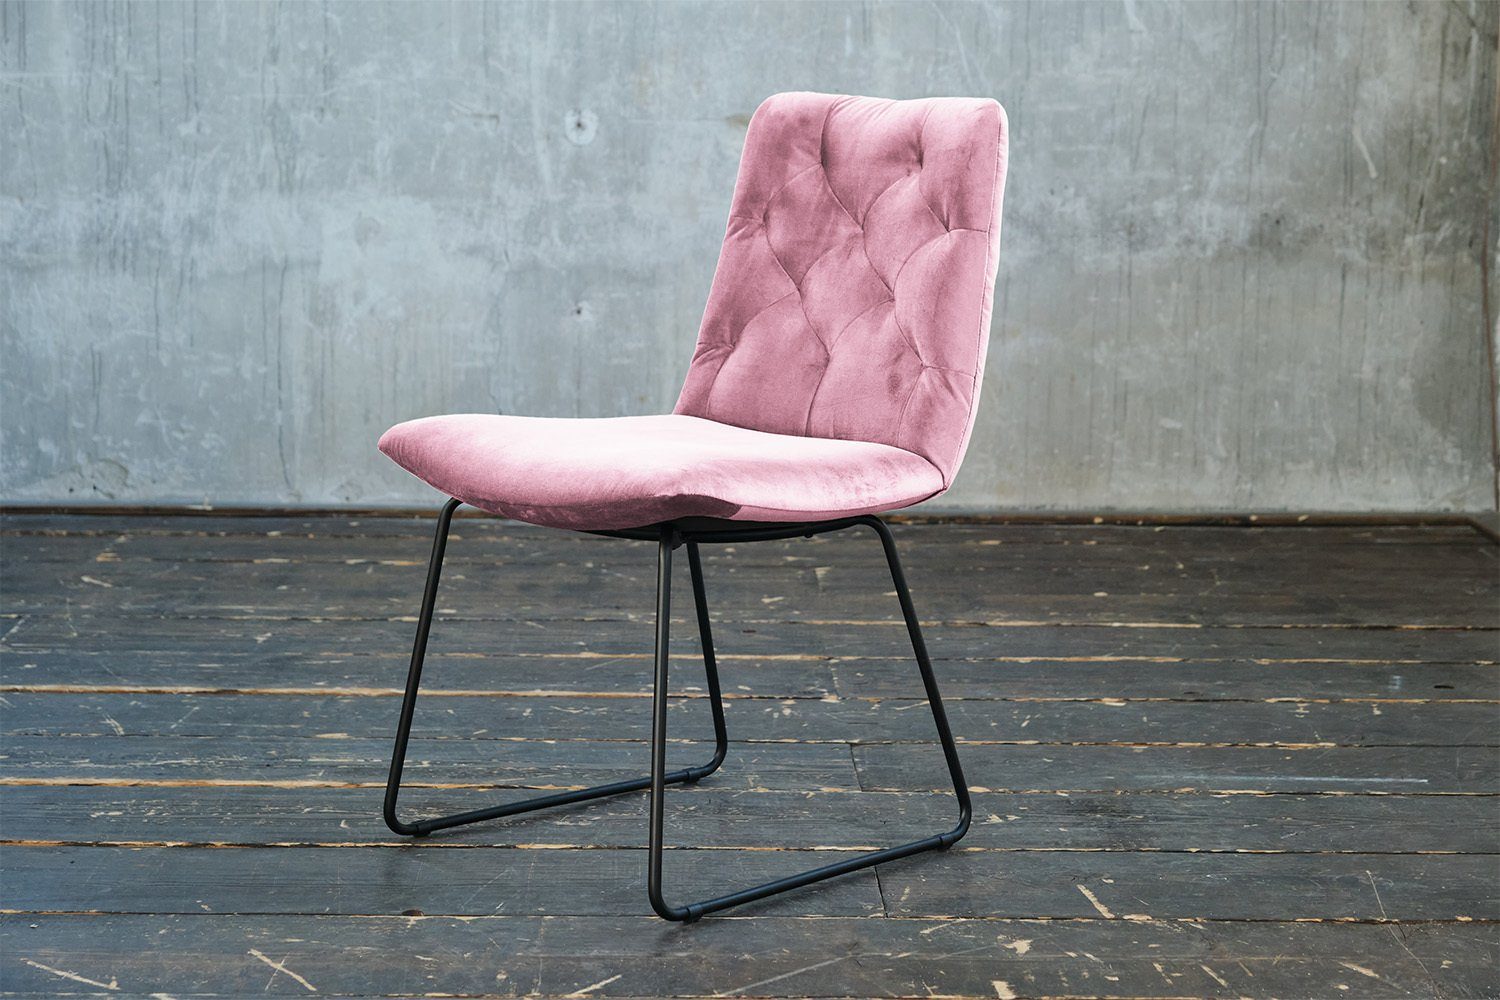 KAWOLA ohne od. rosa Stuhl NEW Esszimmerstuhl Velvet, Drehfunktion, CHARME, Farben versch. mit